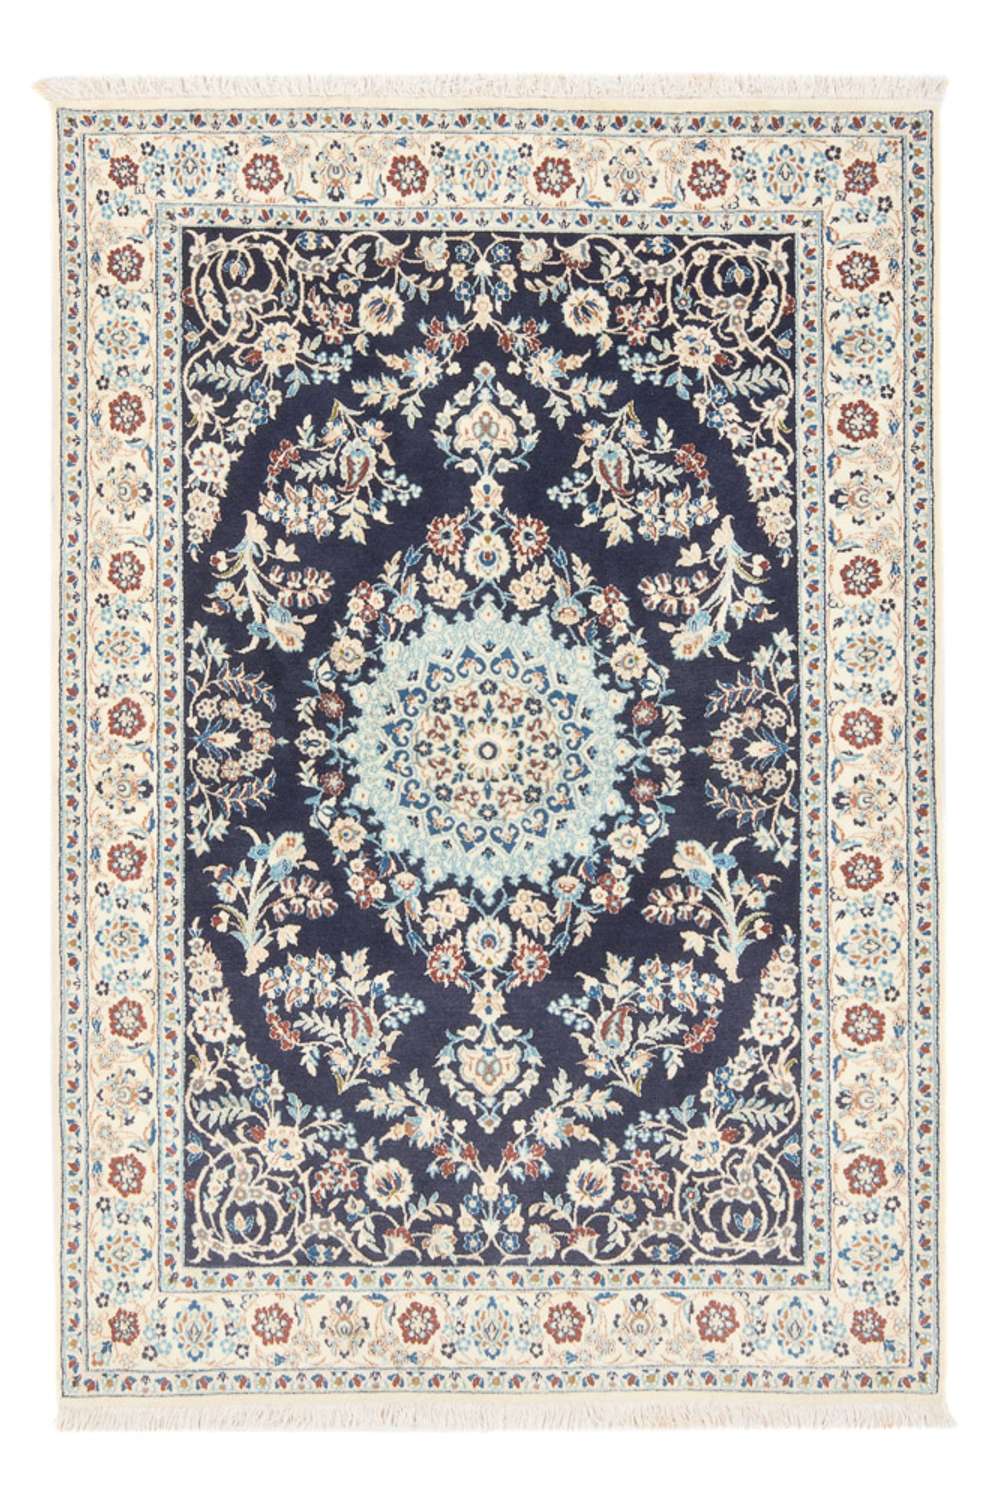 Tapis persan - Nain - Premium - 150 x 102 cm - bleu foncé